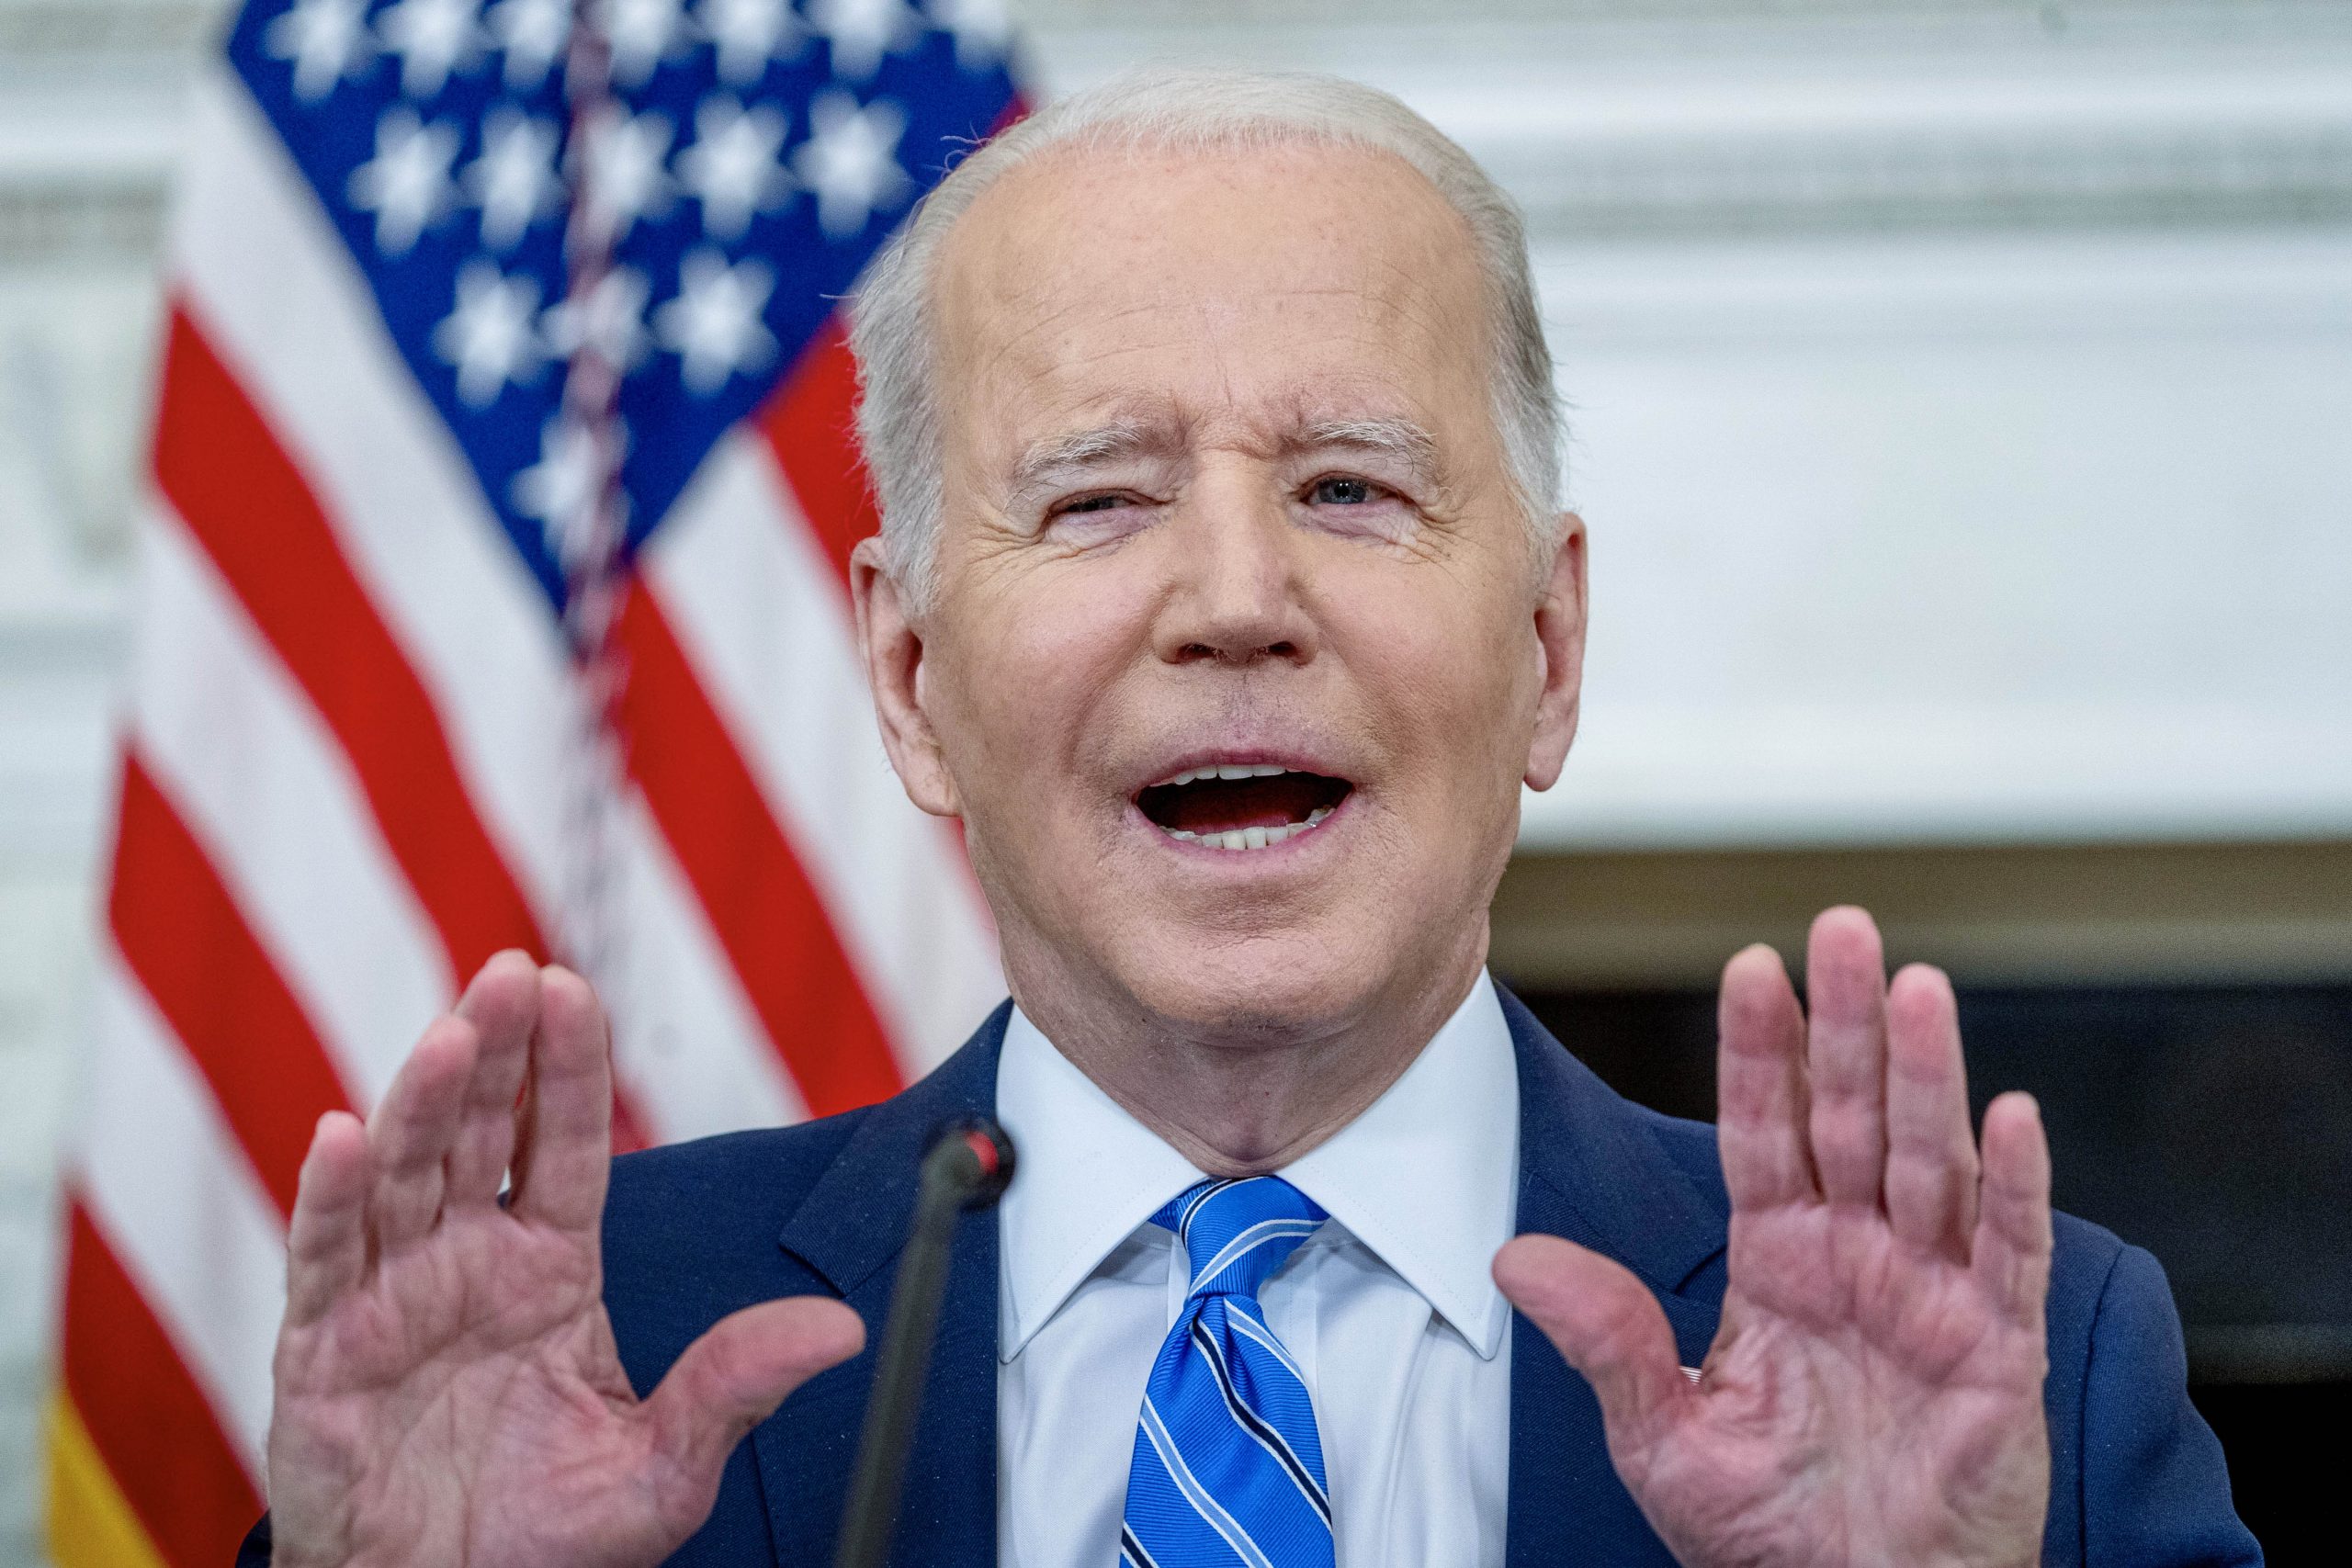 Joe Biden’s reported crack pipe scheme garners heavy criticism online